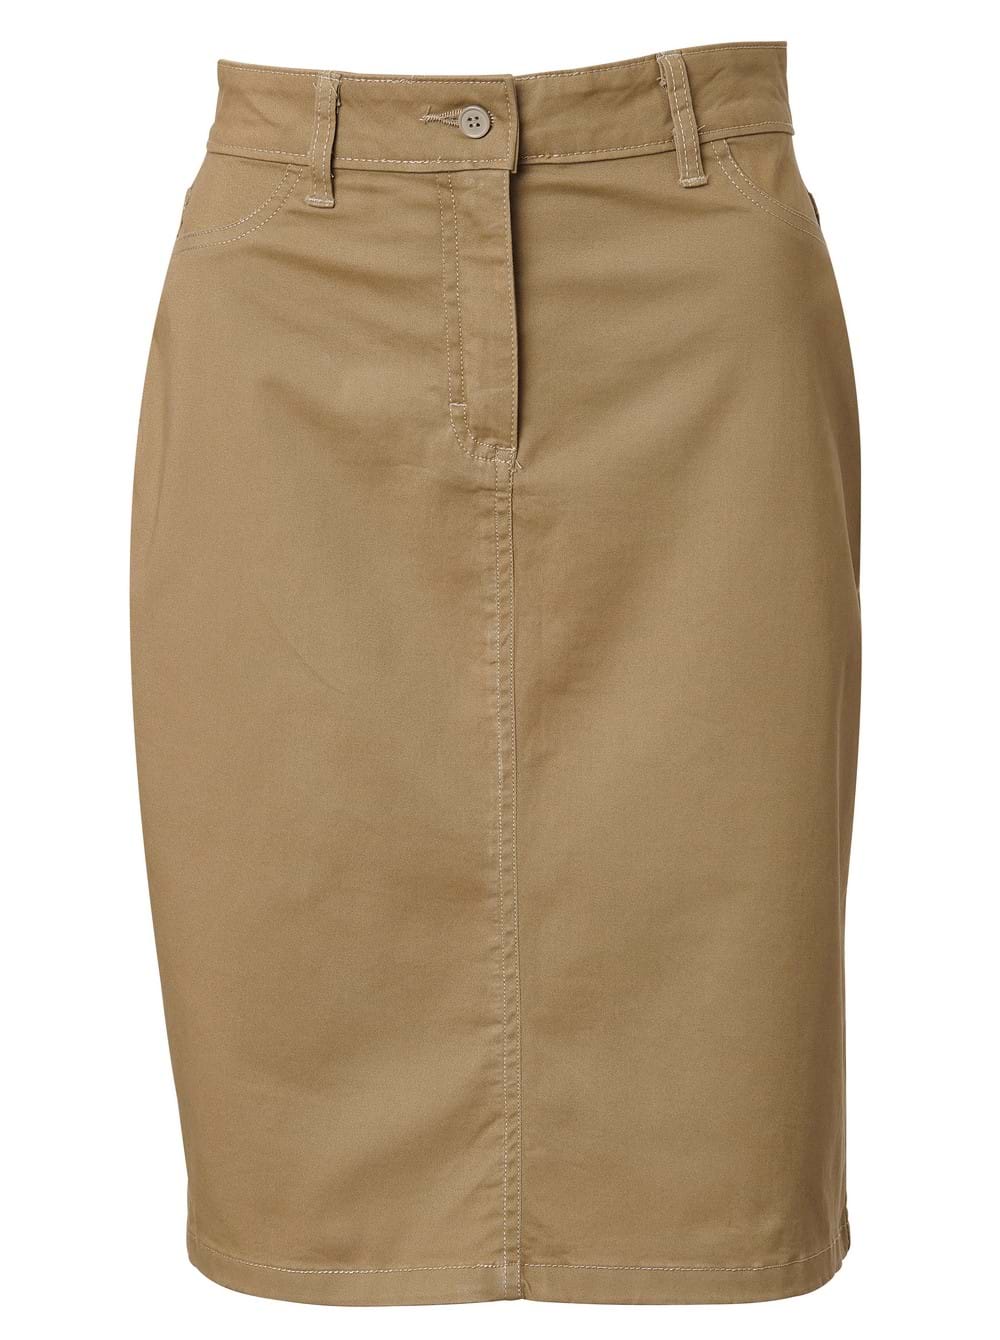 Ladies Chino Skirt - Khaki / 48 - Knee-Length Skirts